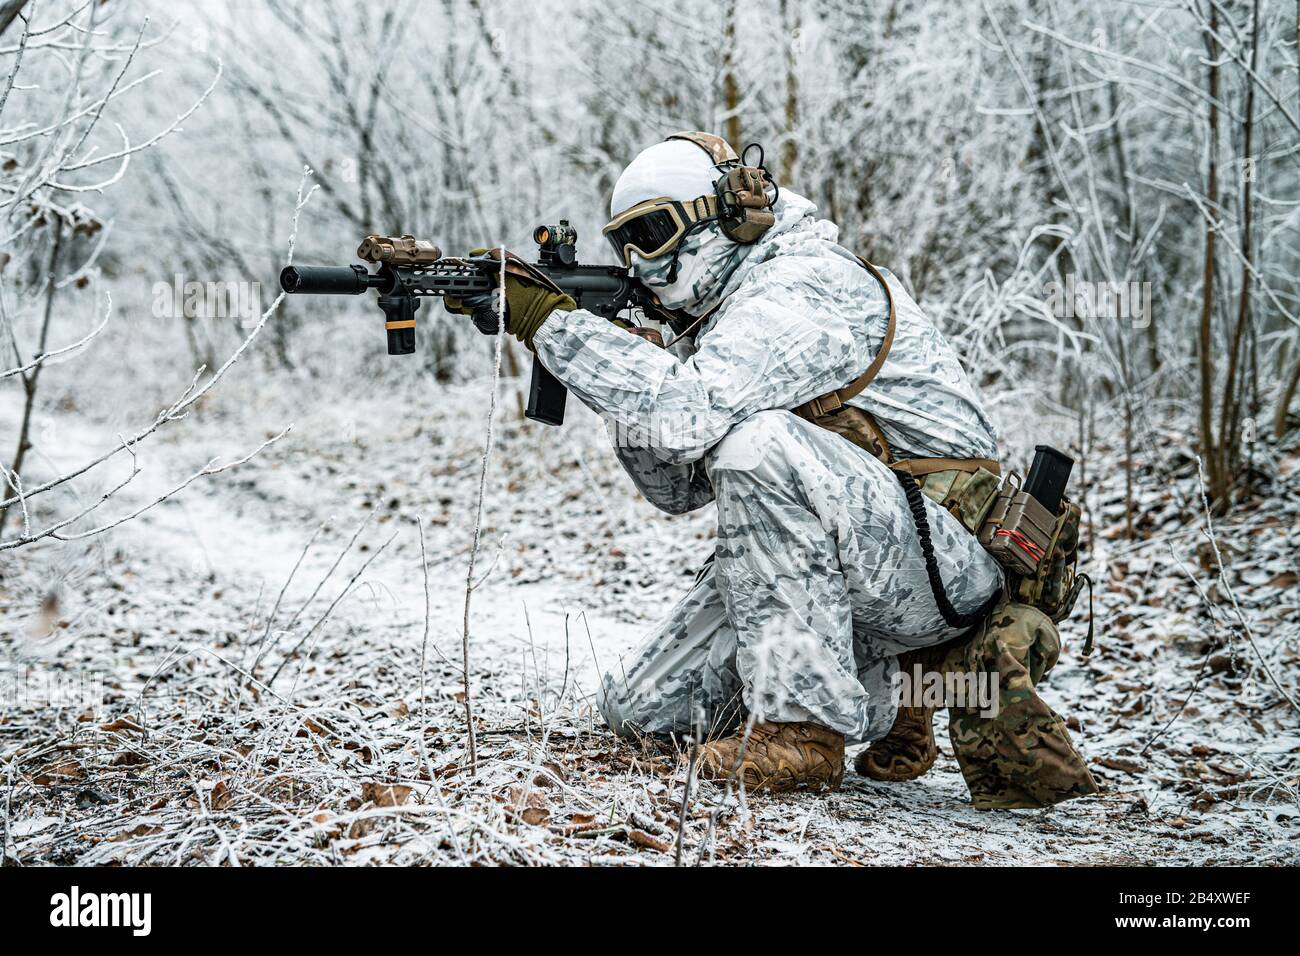 Airsoft man in white camouflage uniform with machinegun. Soldier